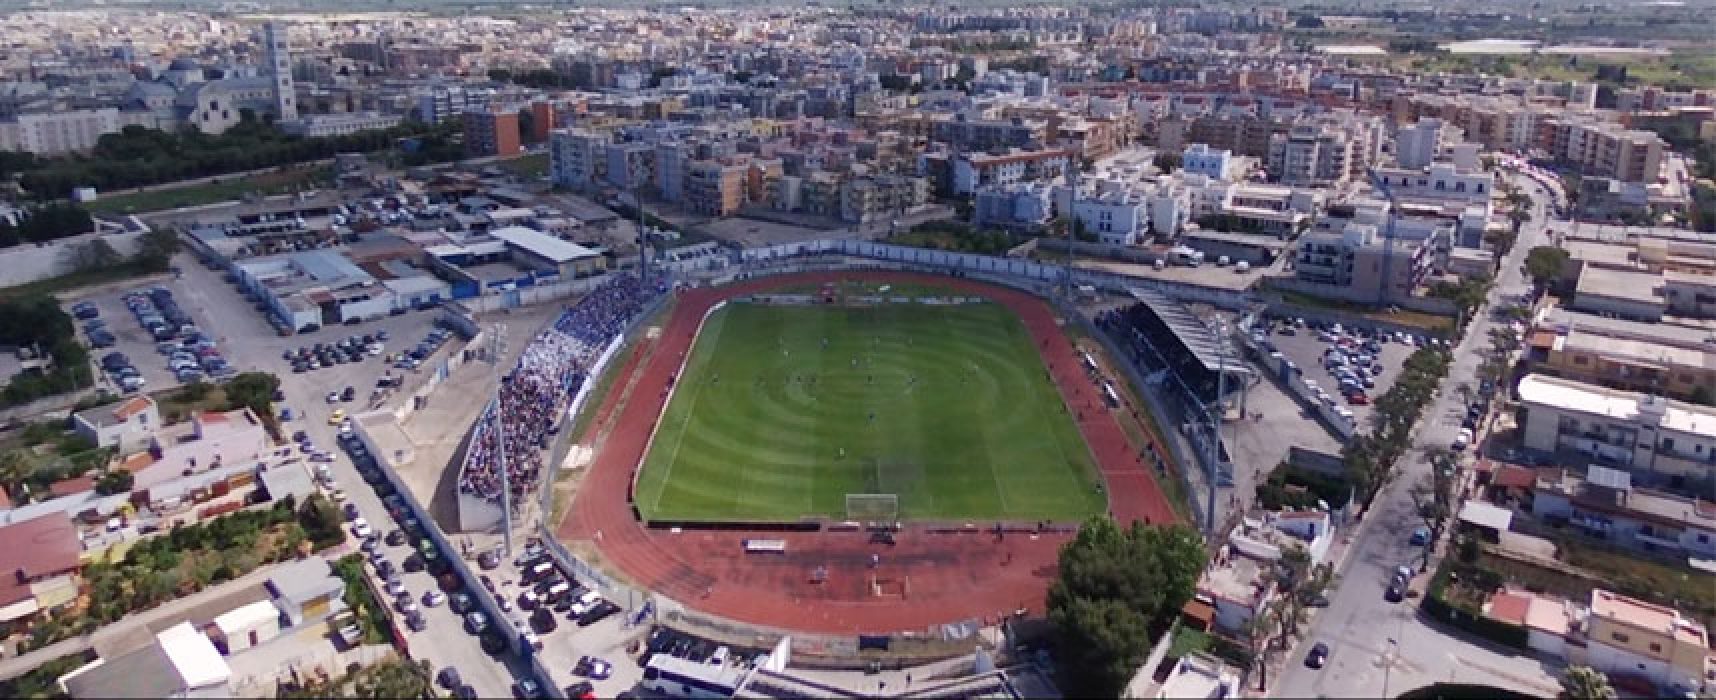 Bisceglie-Lecce, il comune ordina chiusura anticipata delle attività commerciali in zona stadio